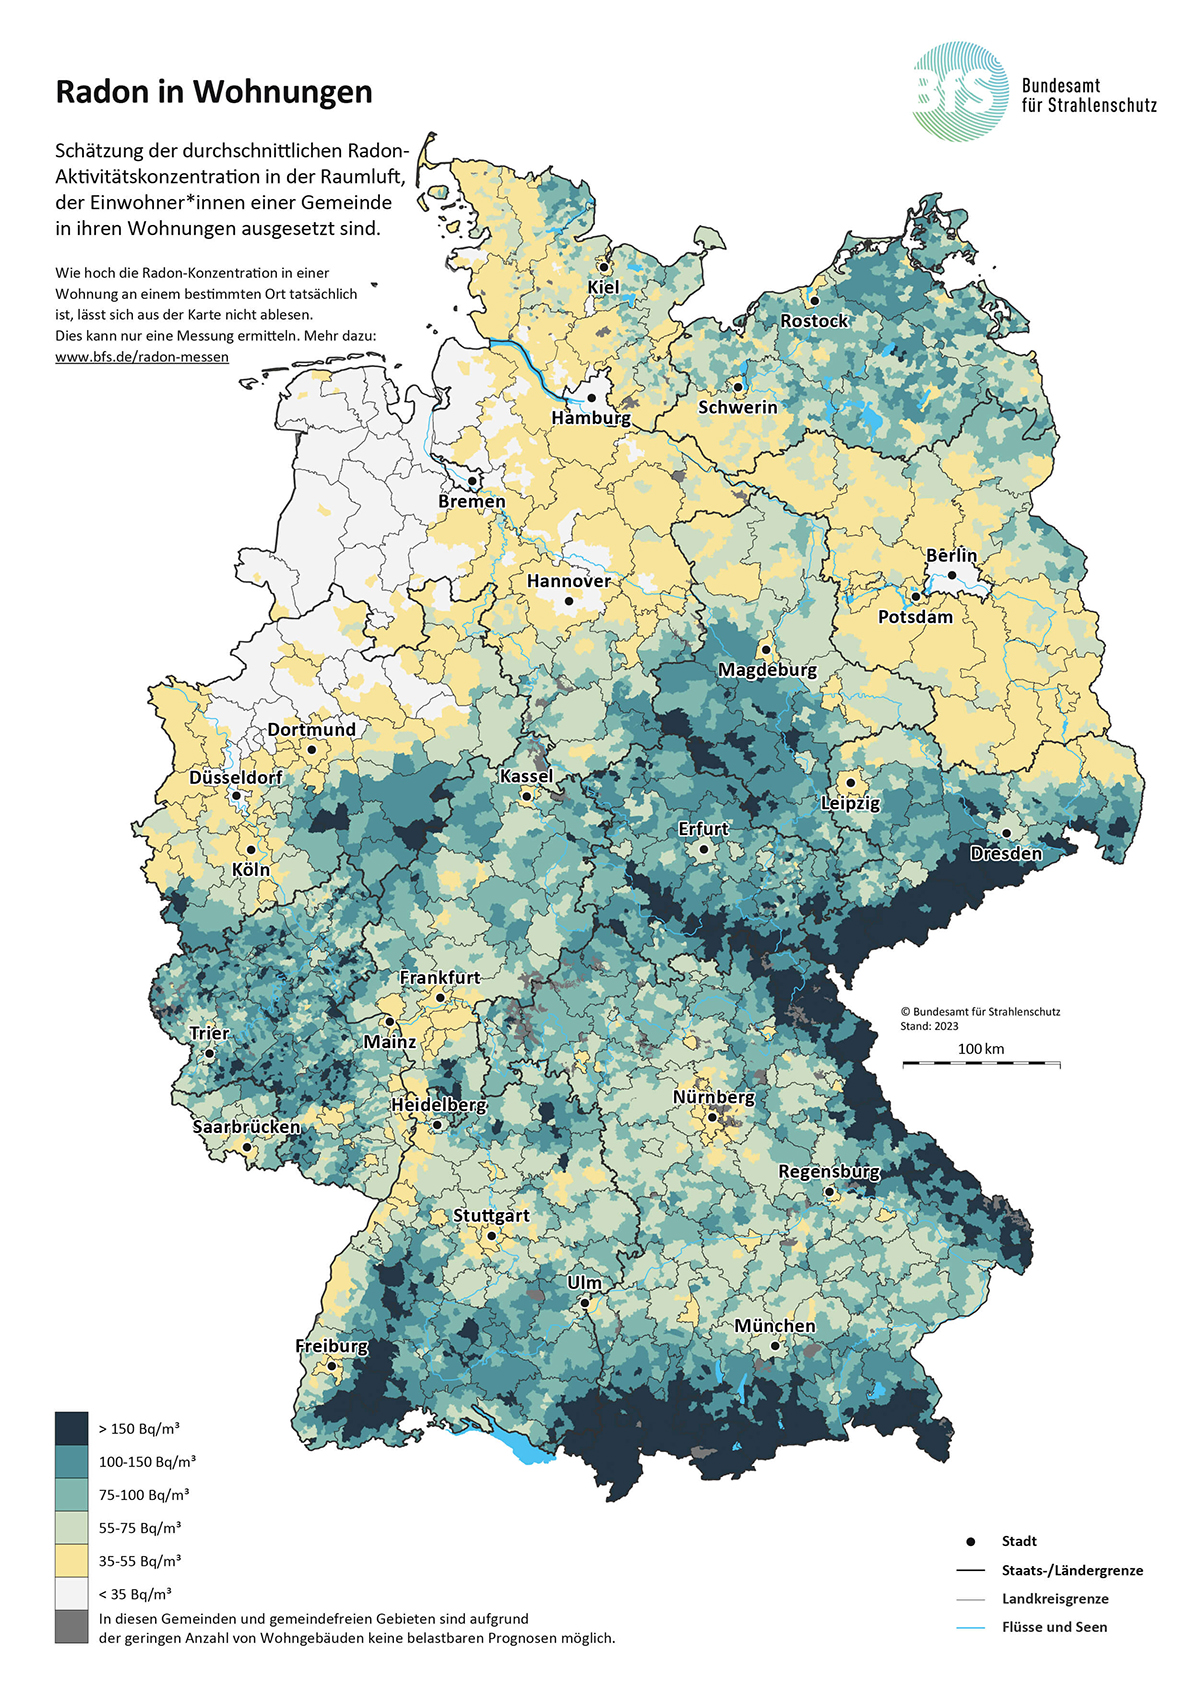 Die Karte bietet eine Übersicht der Durchschnittlichen Radon-Konzentrationen in Deutschland